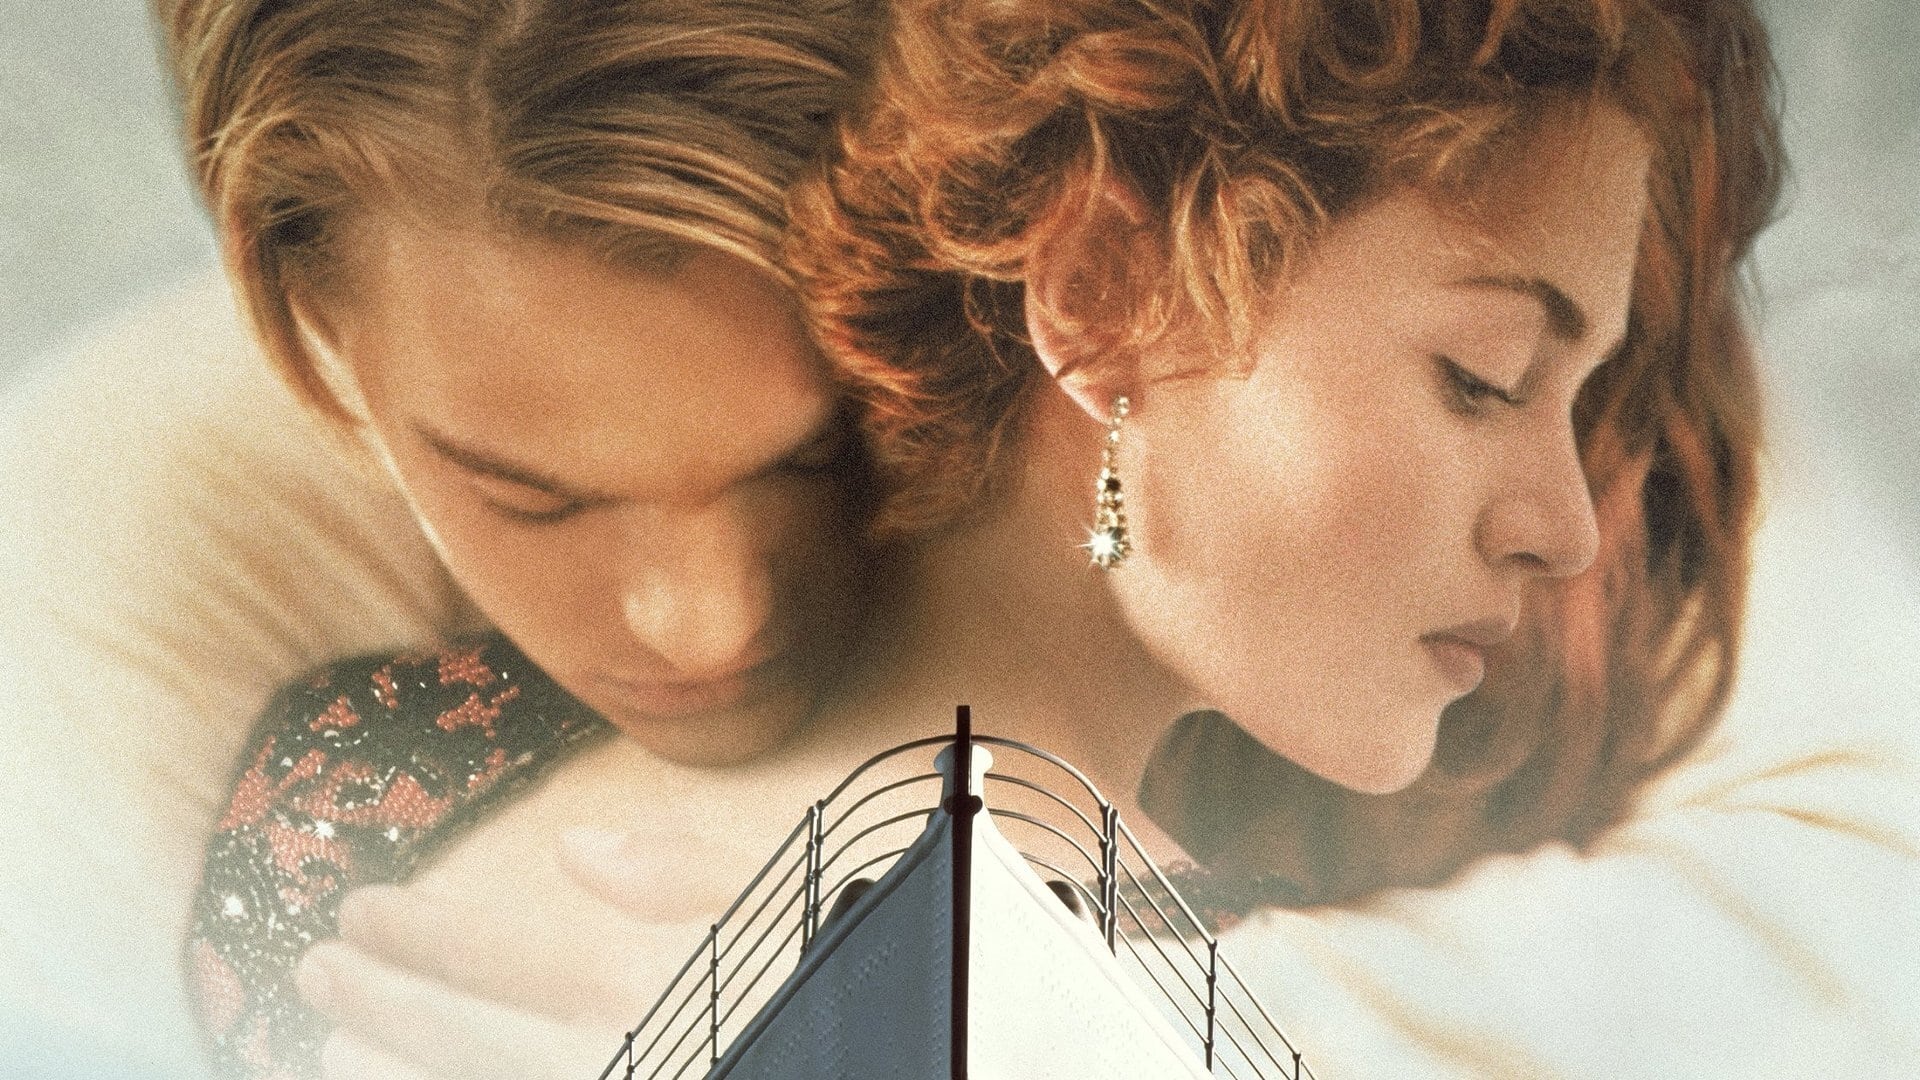 Image du film Titanic wt818lxsrynu1bqjuhxw2j2hikzjpg